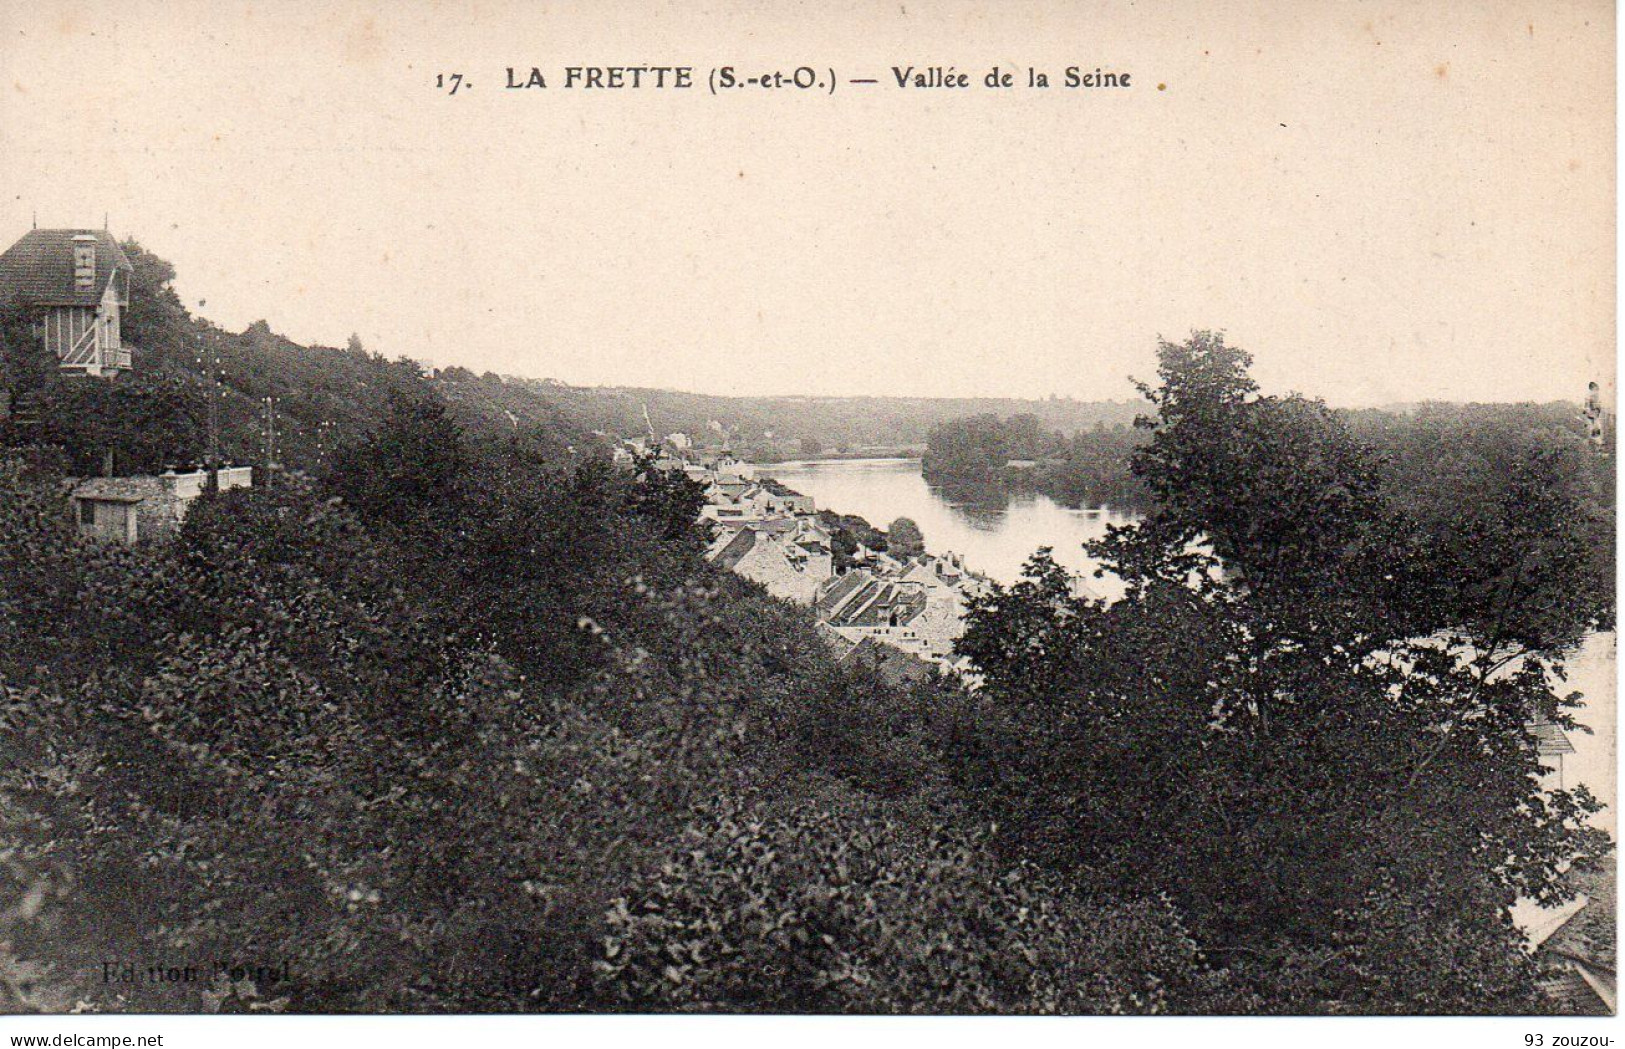 95. La Frette Vallée De La Seine.  Carte , Vierge Et Impeccable. - La Frette-sur-Seine